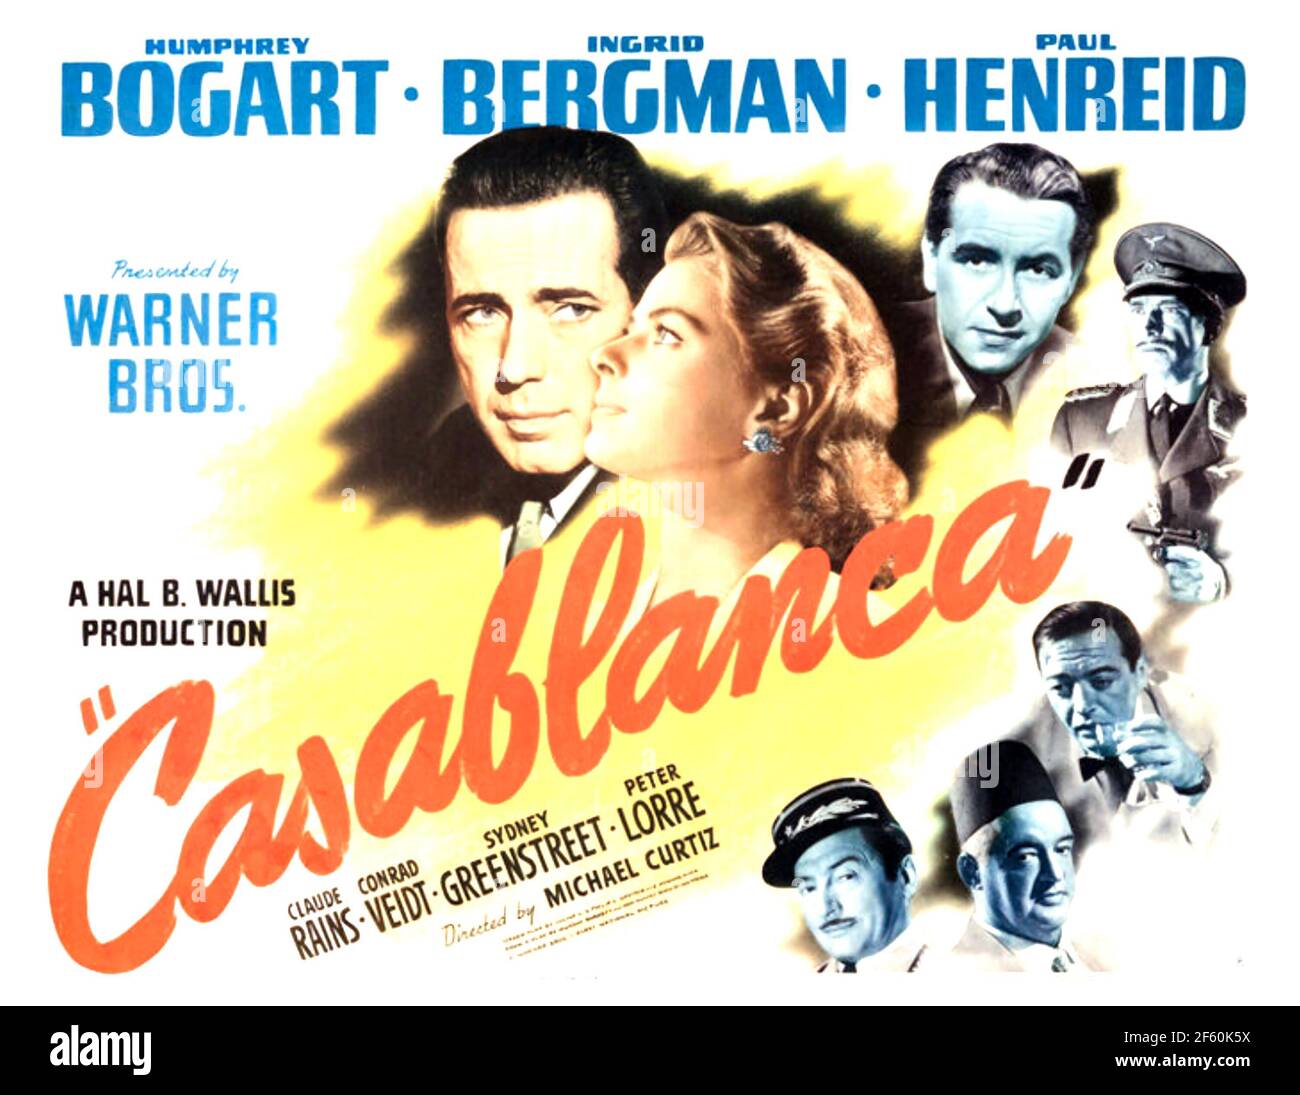 CASABLANCA 1942 film Warner Bros Banque D'Images